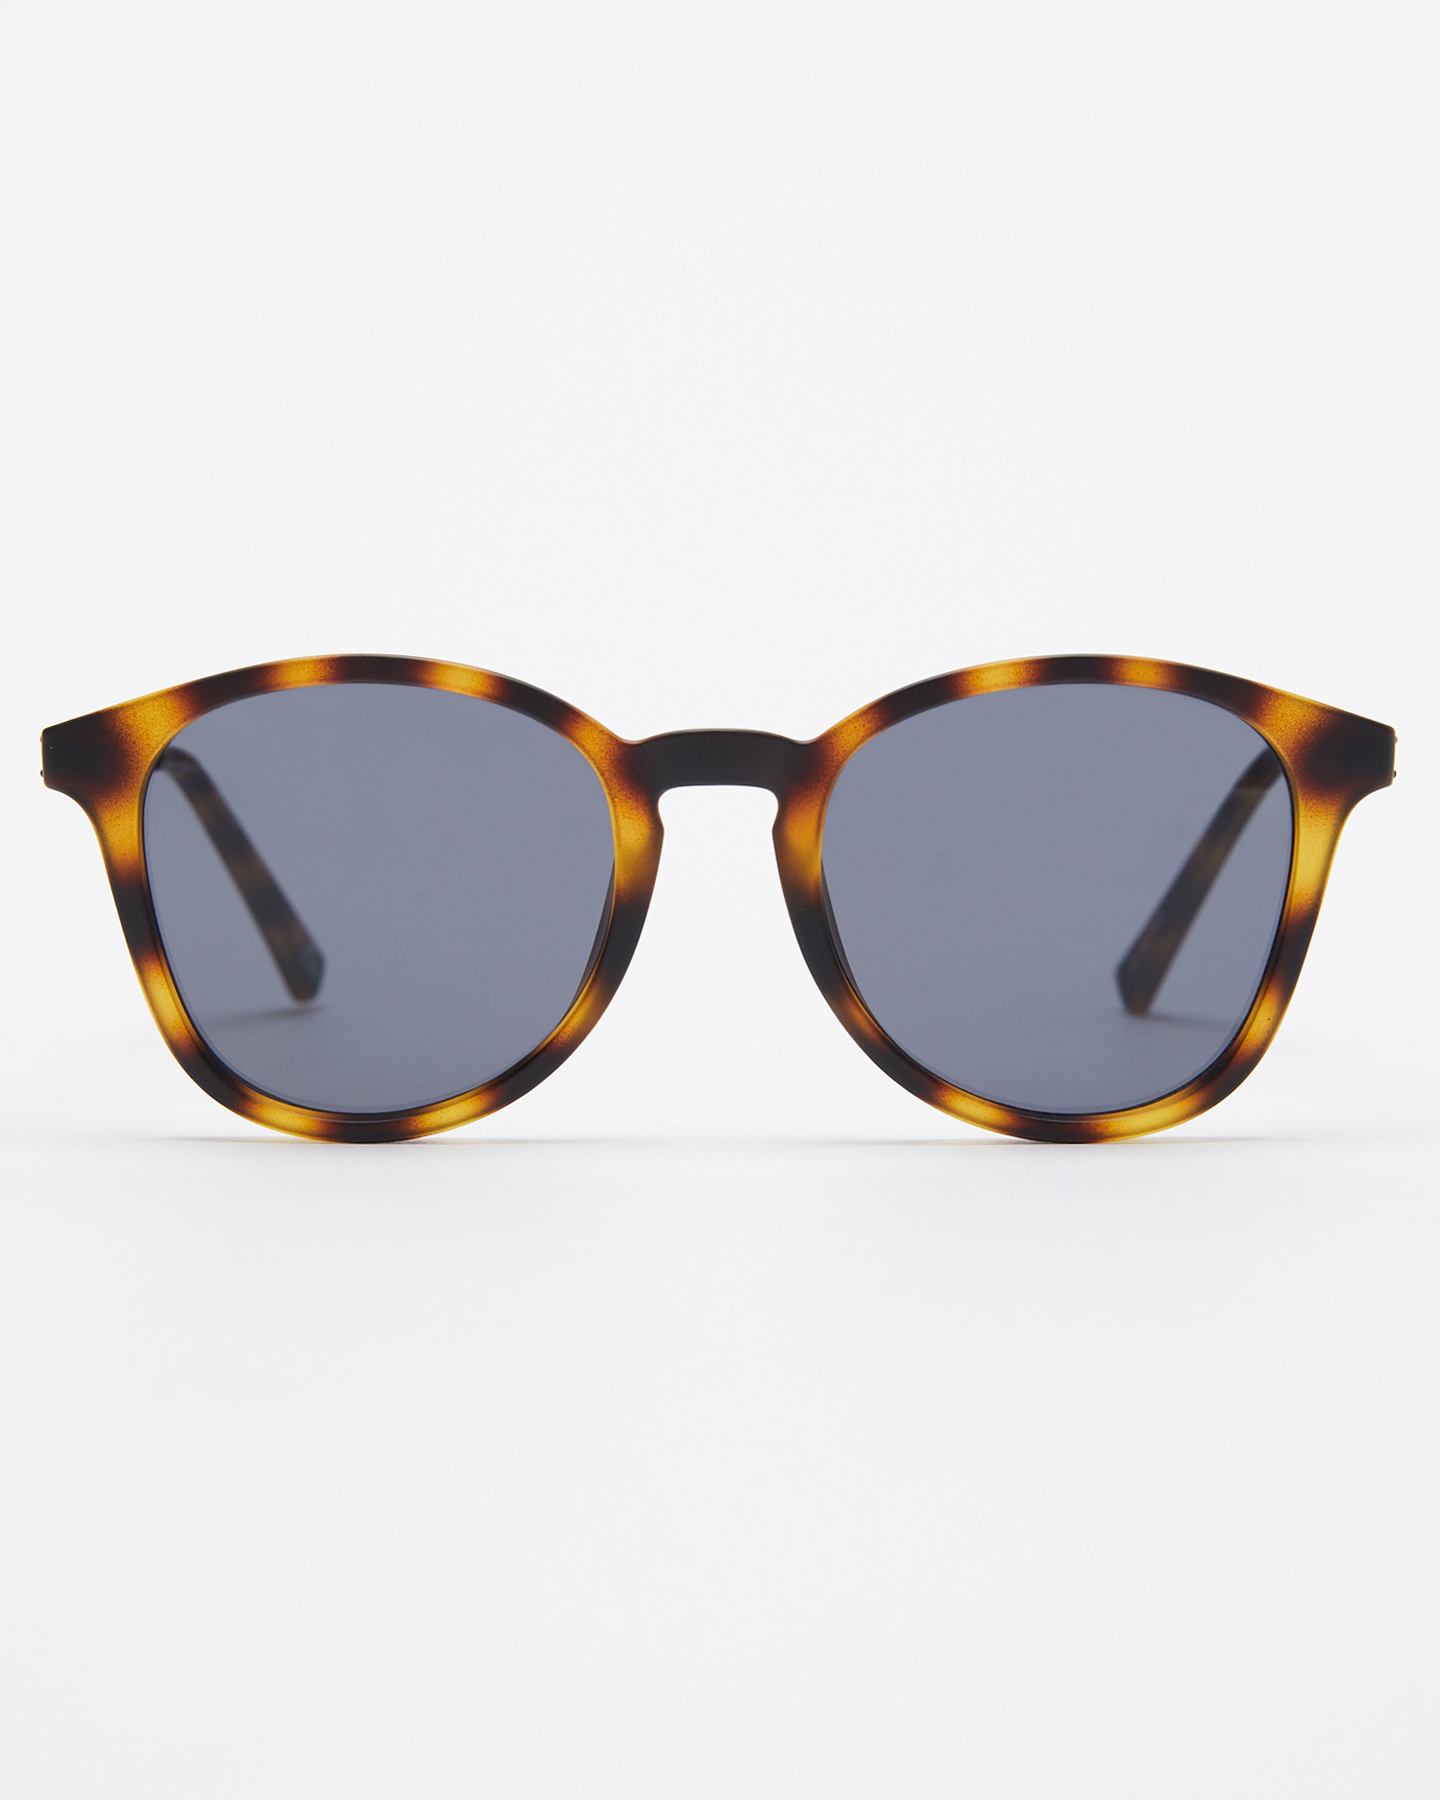 Le Specs Contraband Sunglasses - Matte Tort | SurfStitch